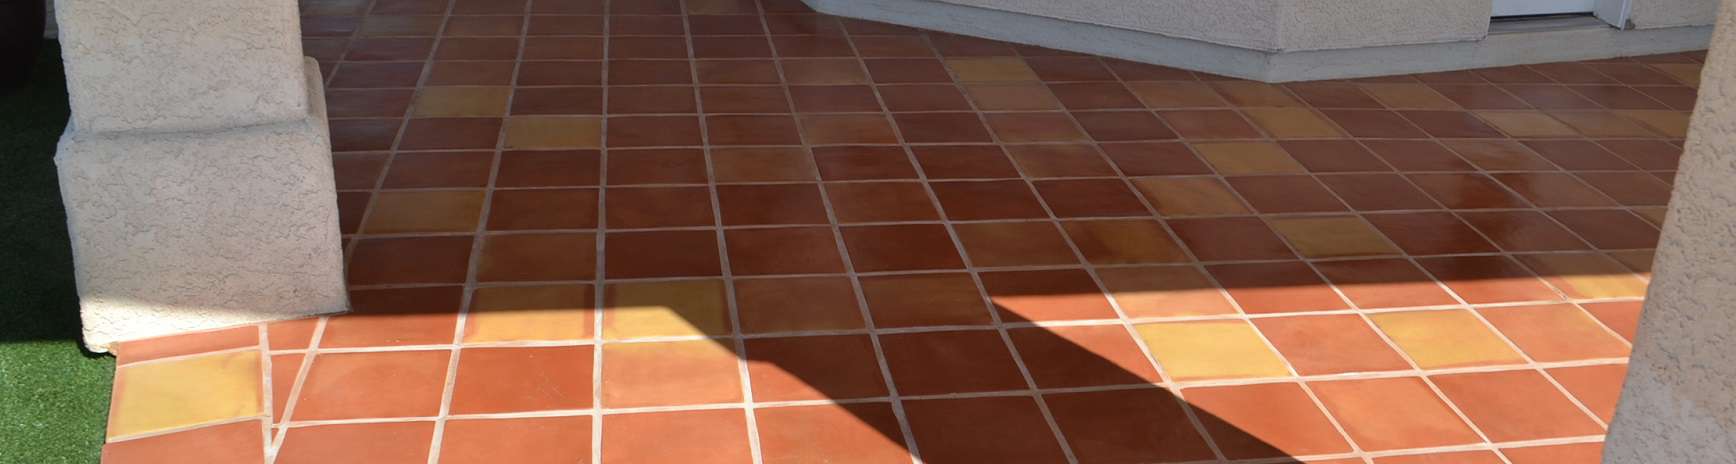 12x12 mexican saltillo tile | Rustico Tile & Stone